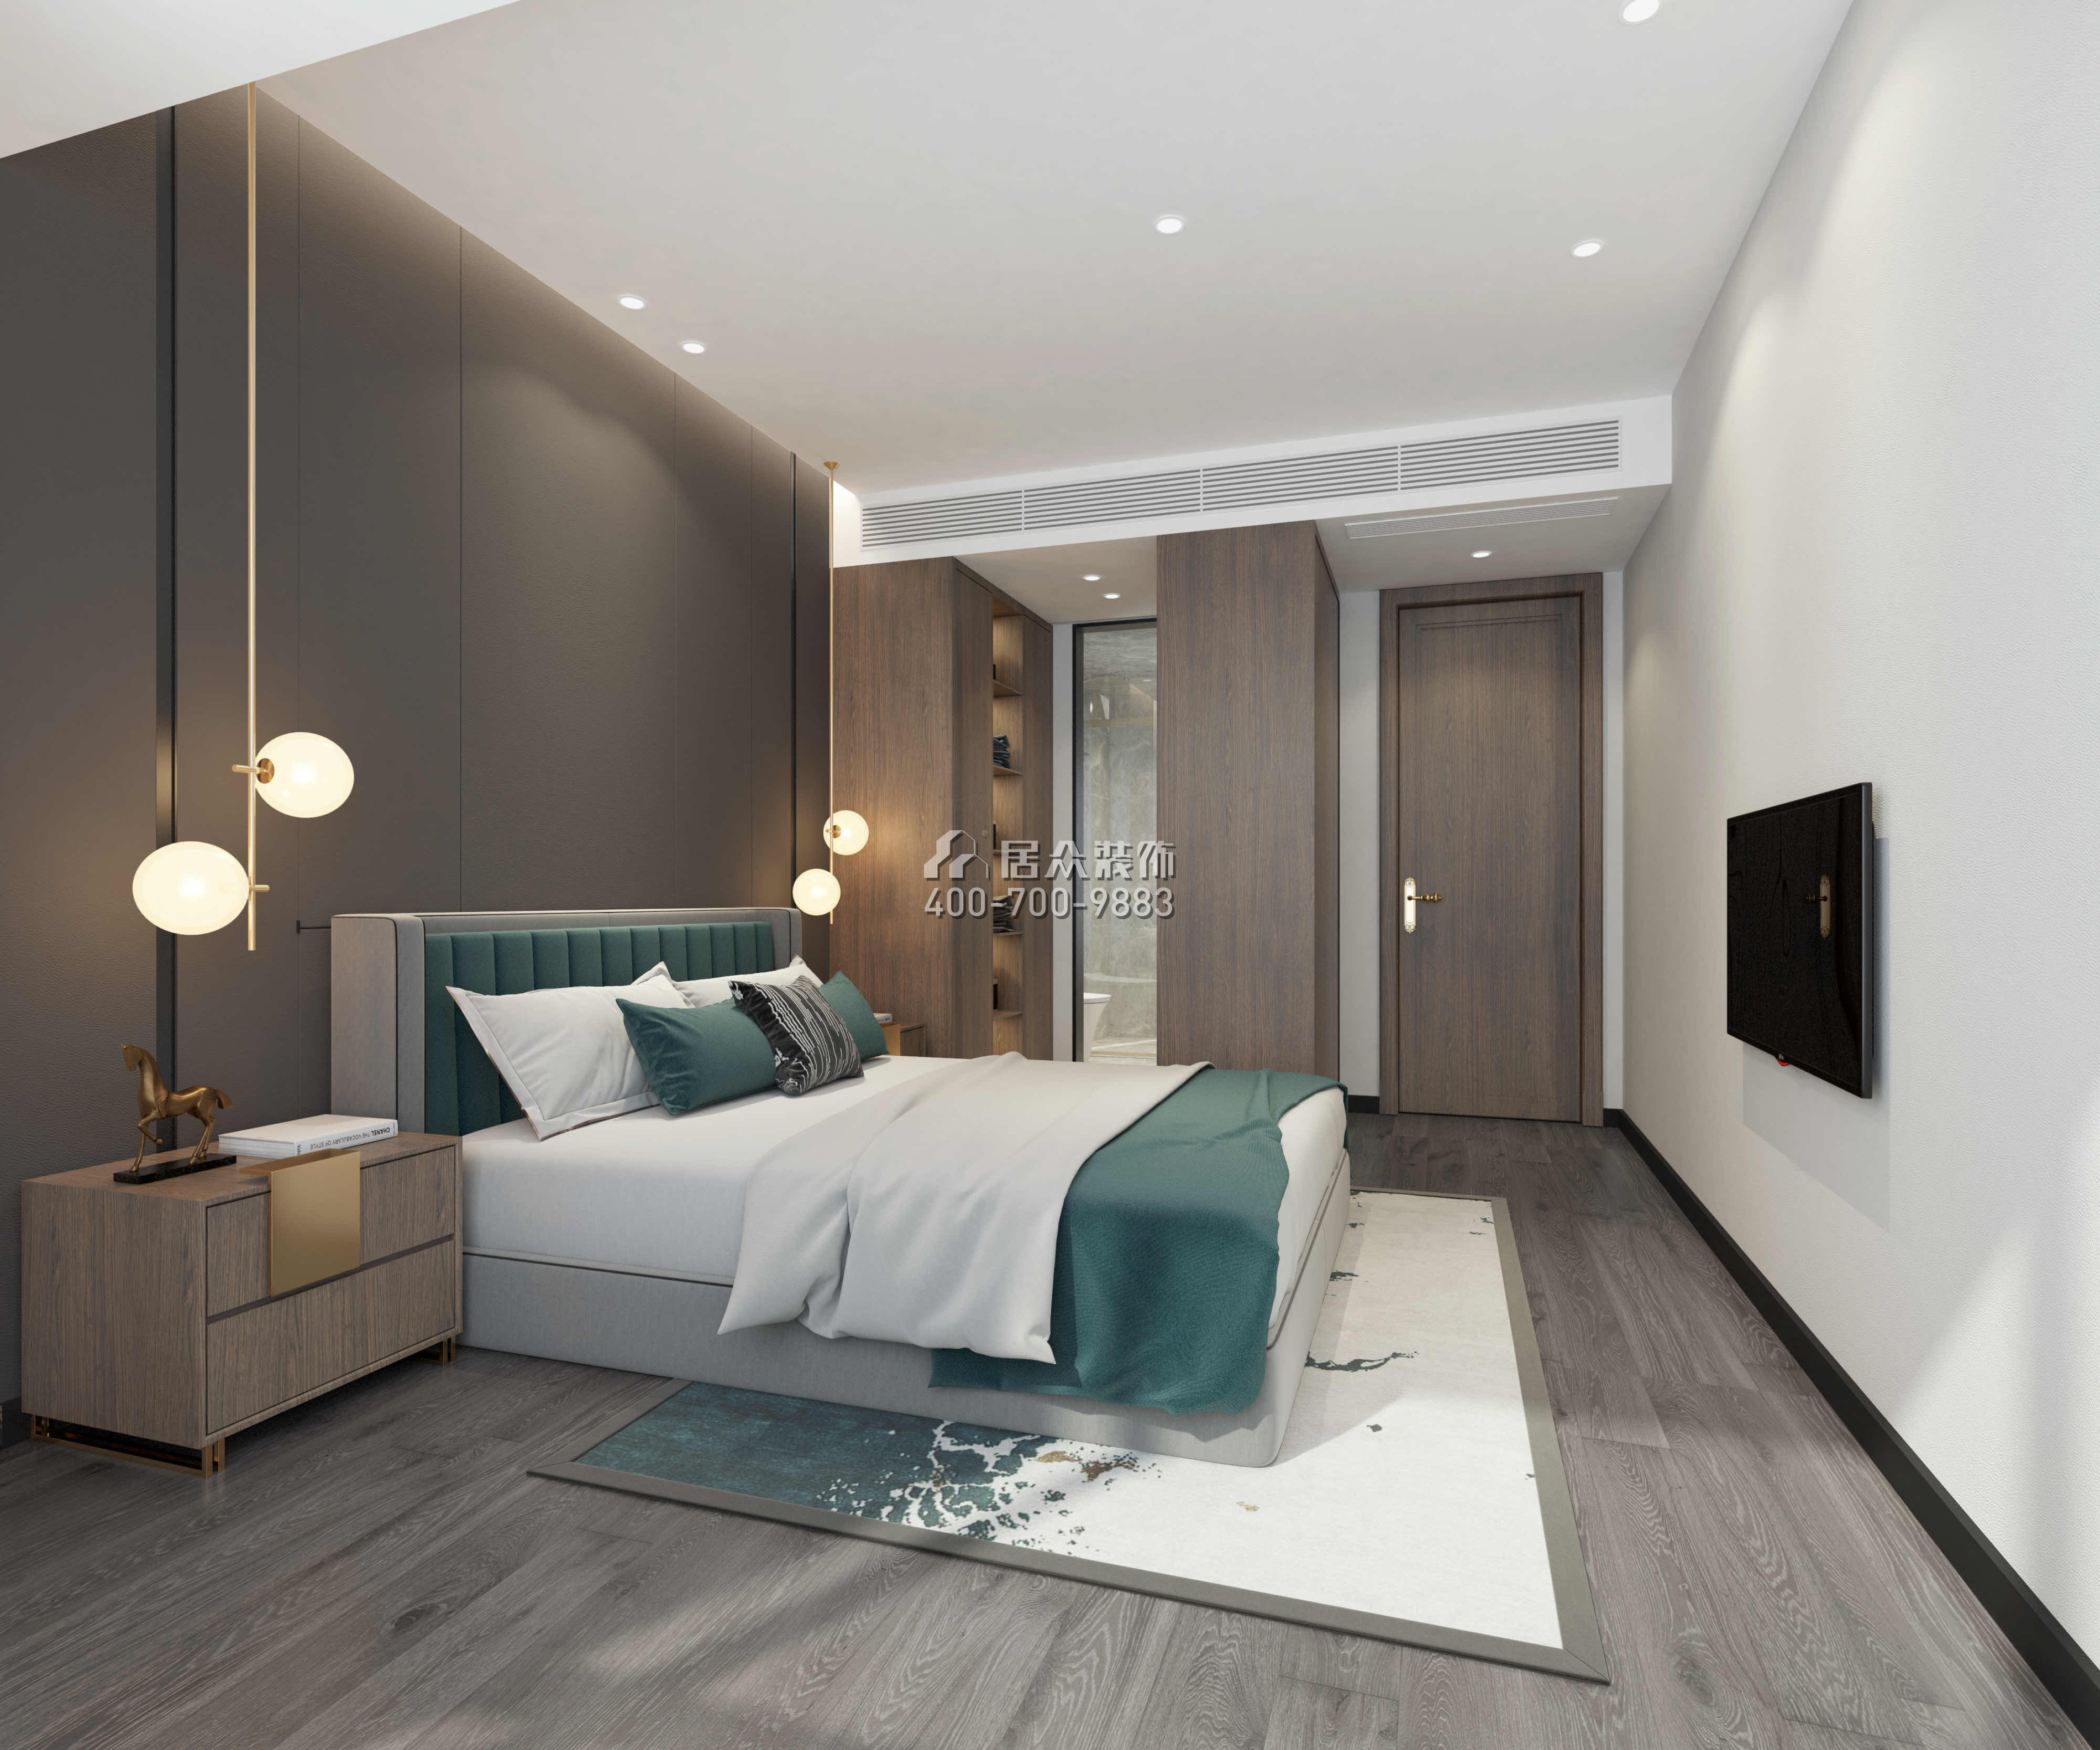 翠沁閣149平方米中式風格平層戶型臥室裝修效果圖